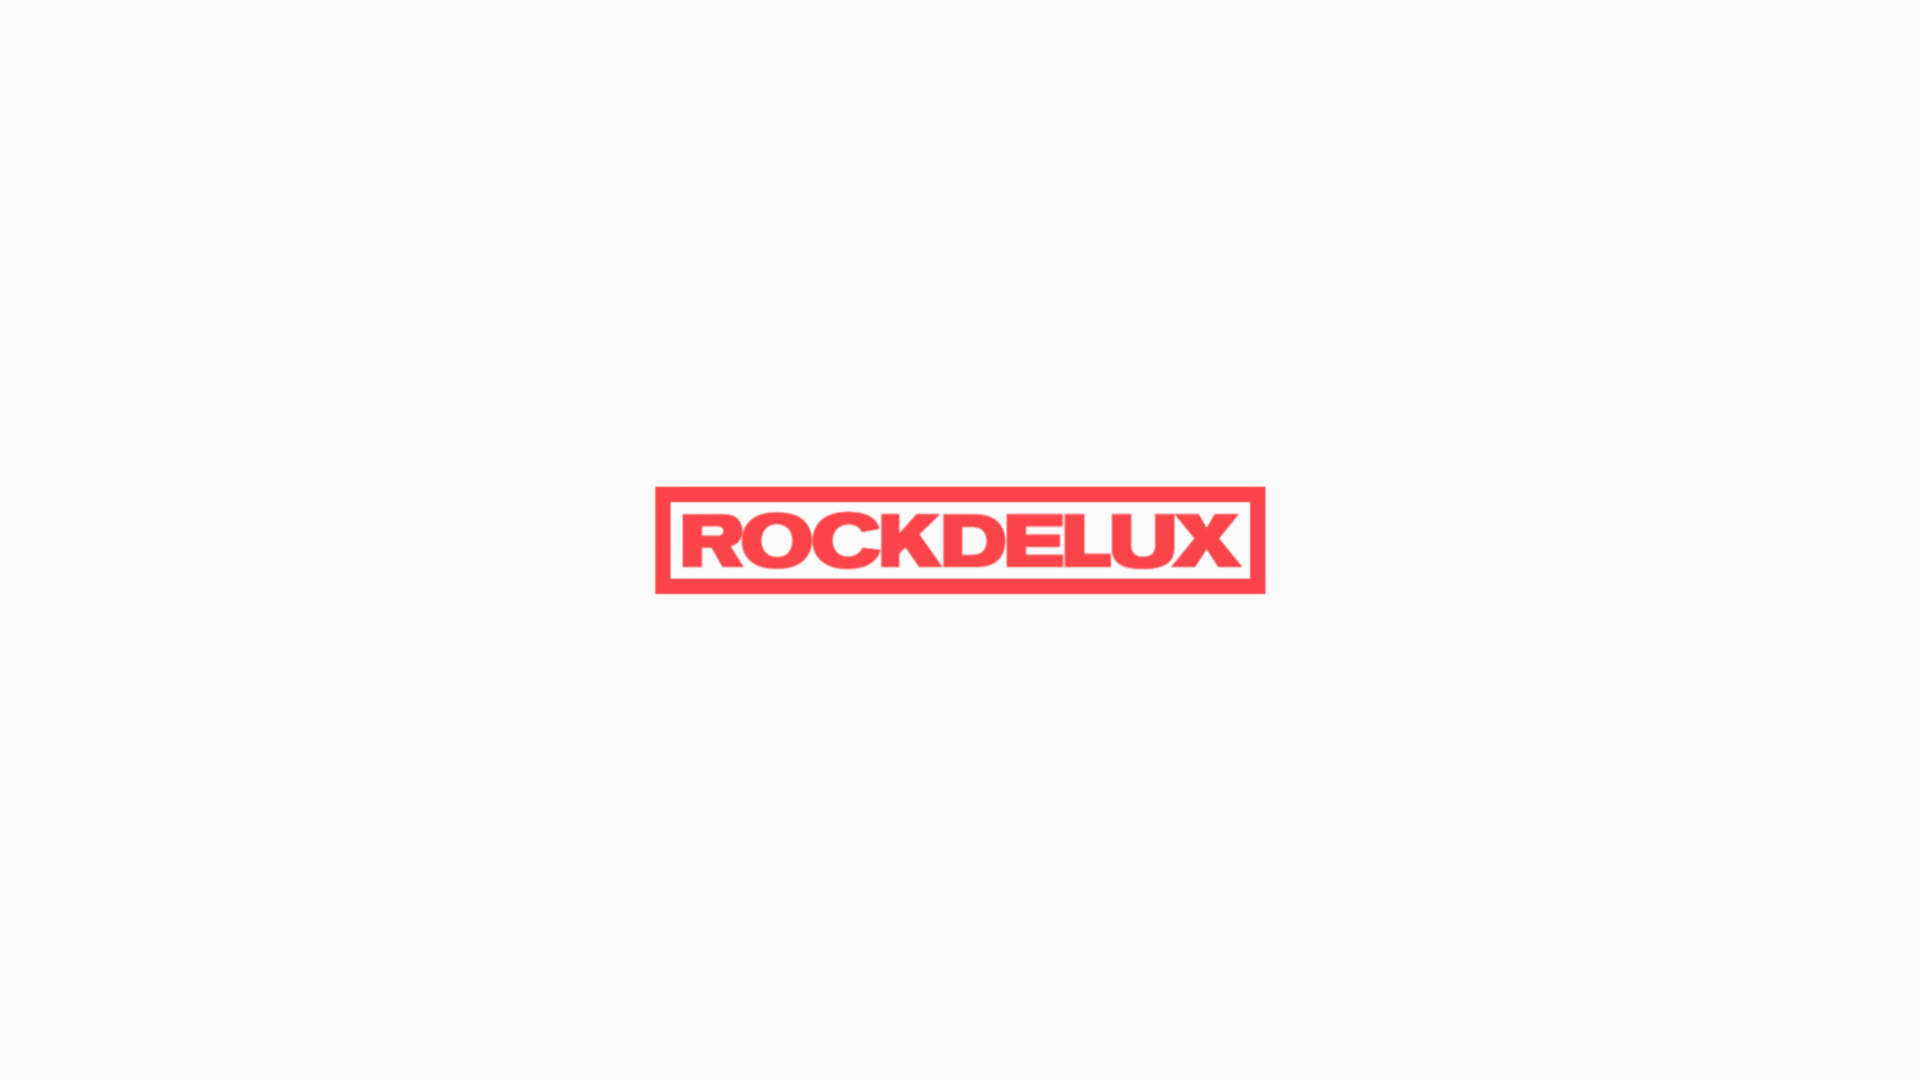 come back Rockdelux